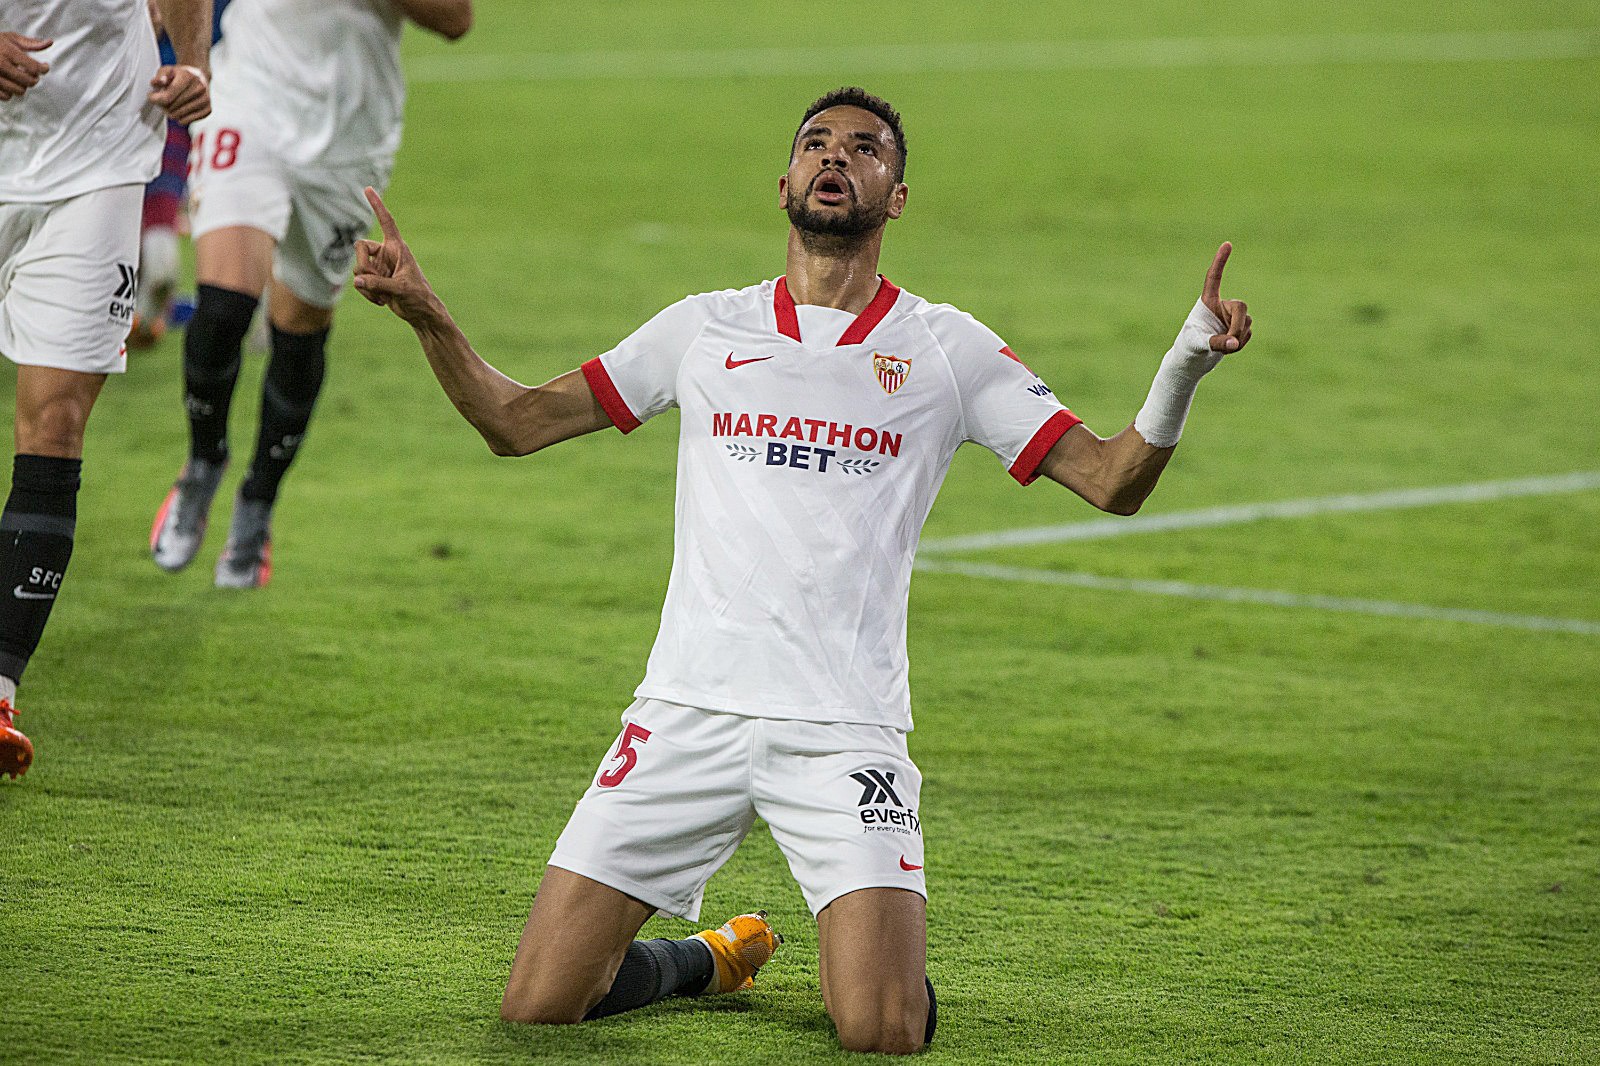 En-Nesyri celebrates the winner against Levante UD